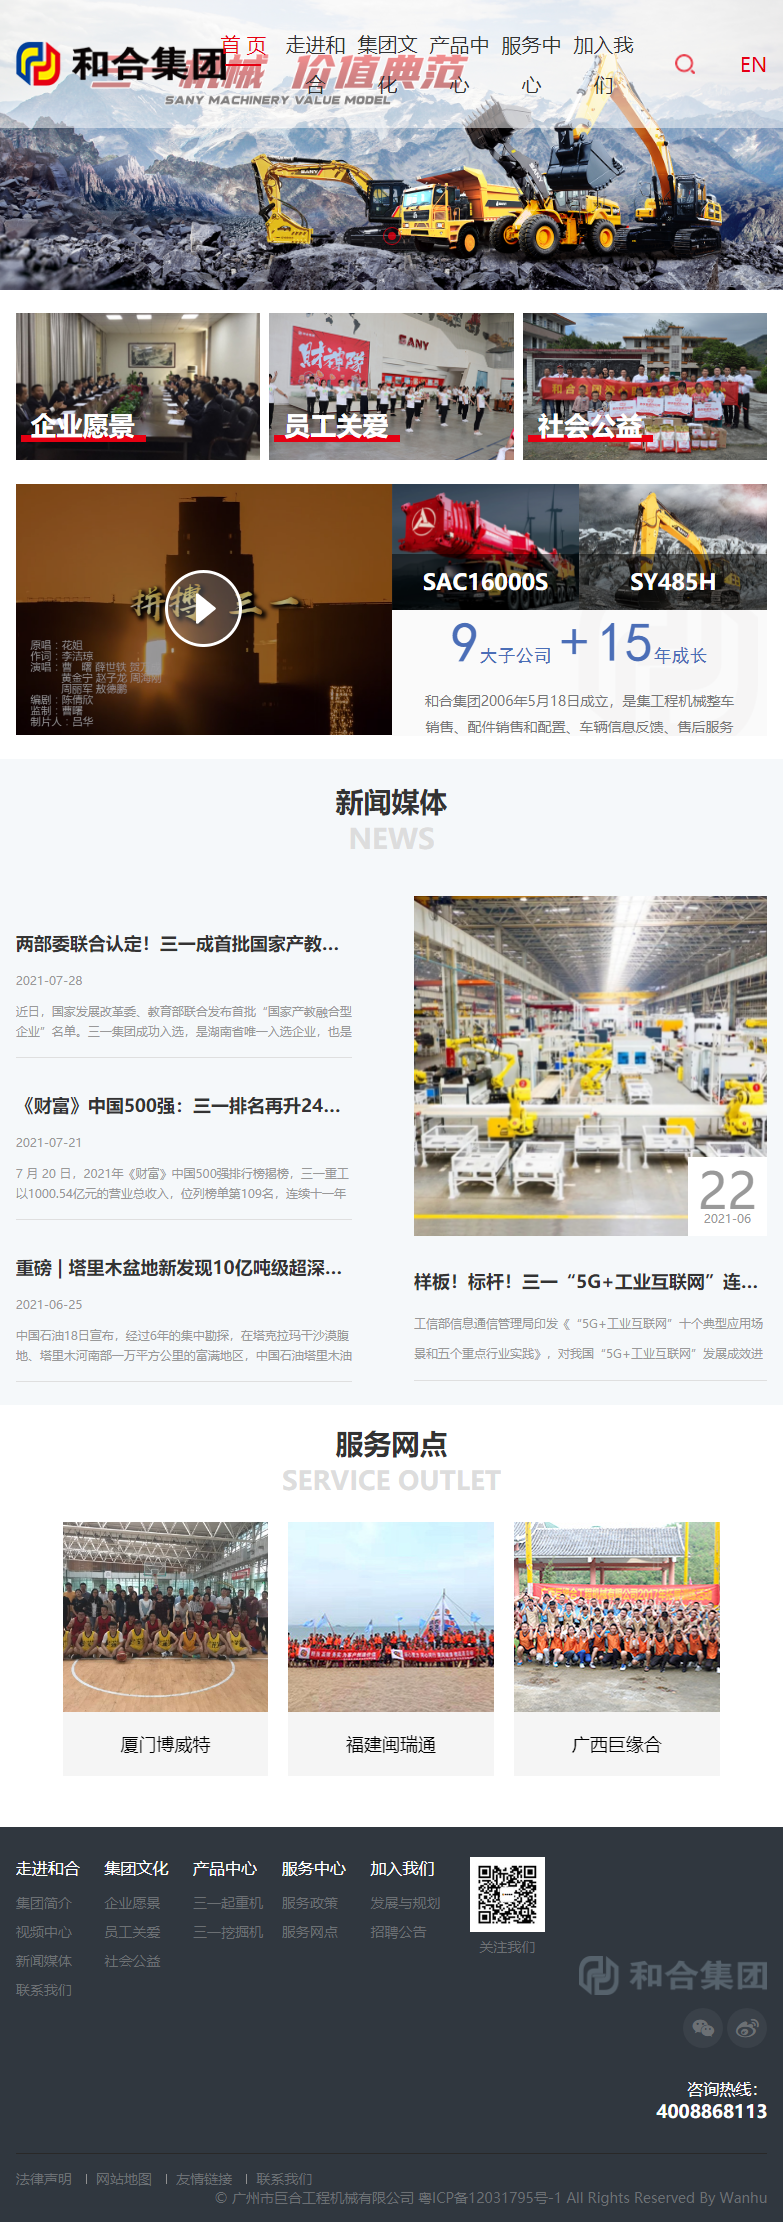 广州市巨合工程机械有限公司网站案例